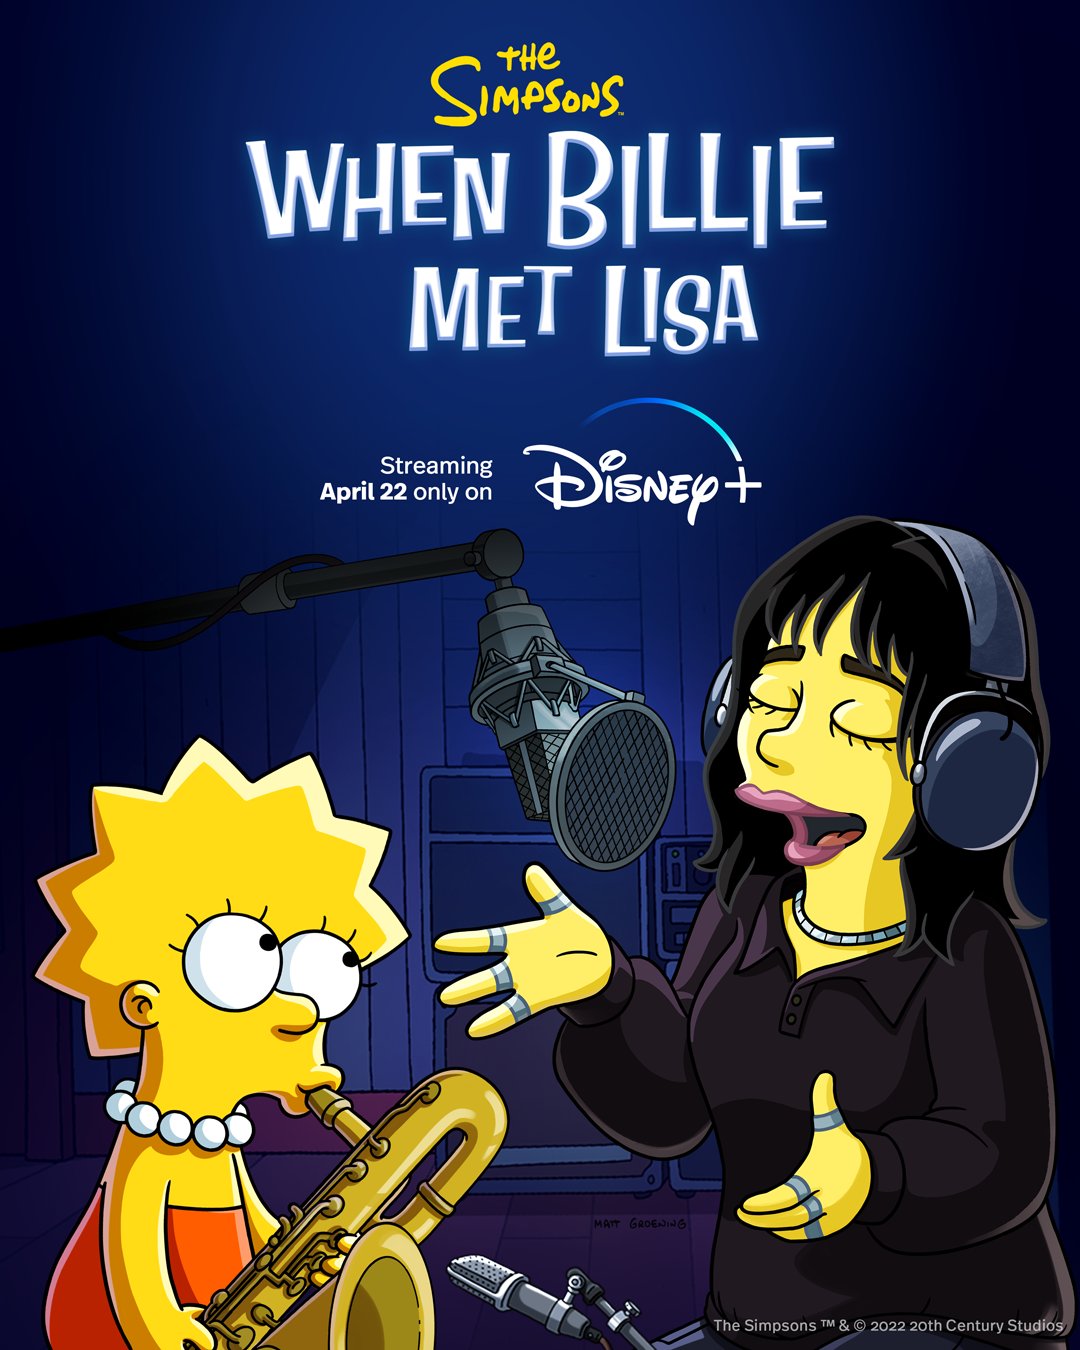 https://www.billieforum.com/media/when_billie_met_lisa-jpg.5160/full